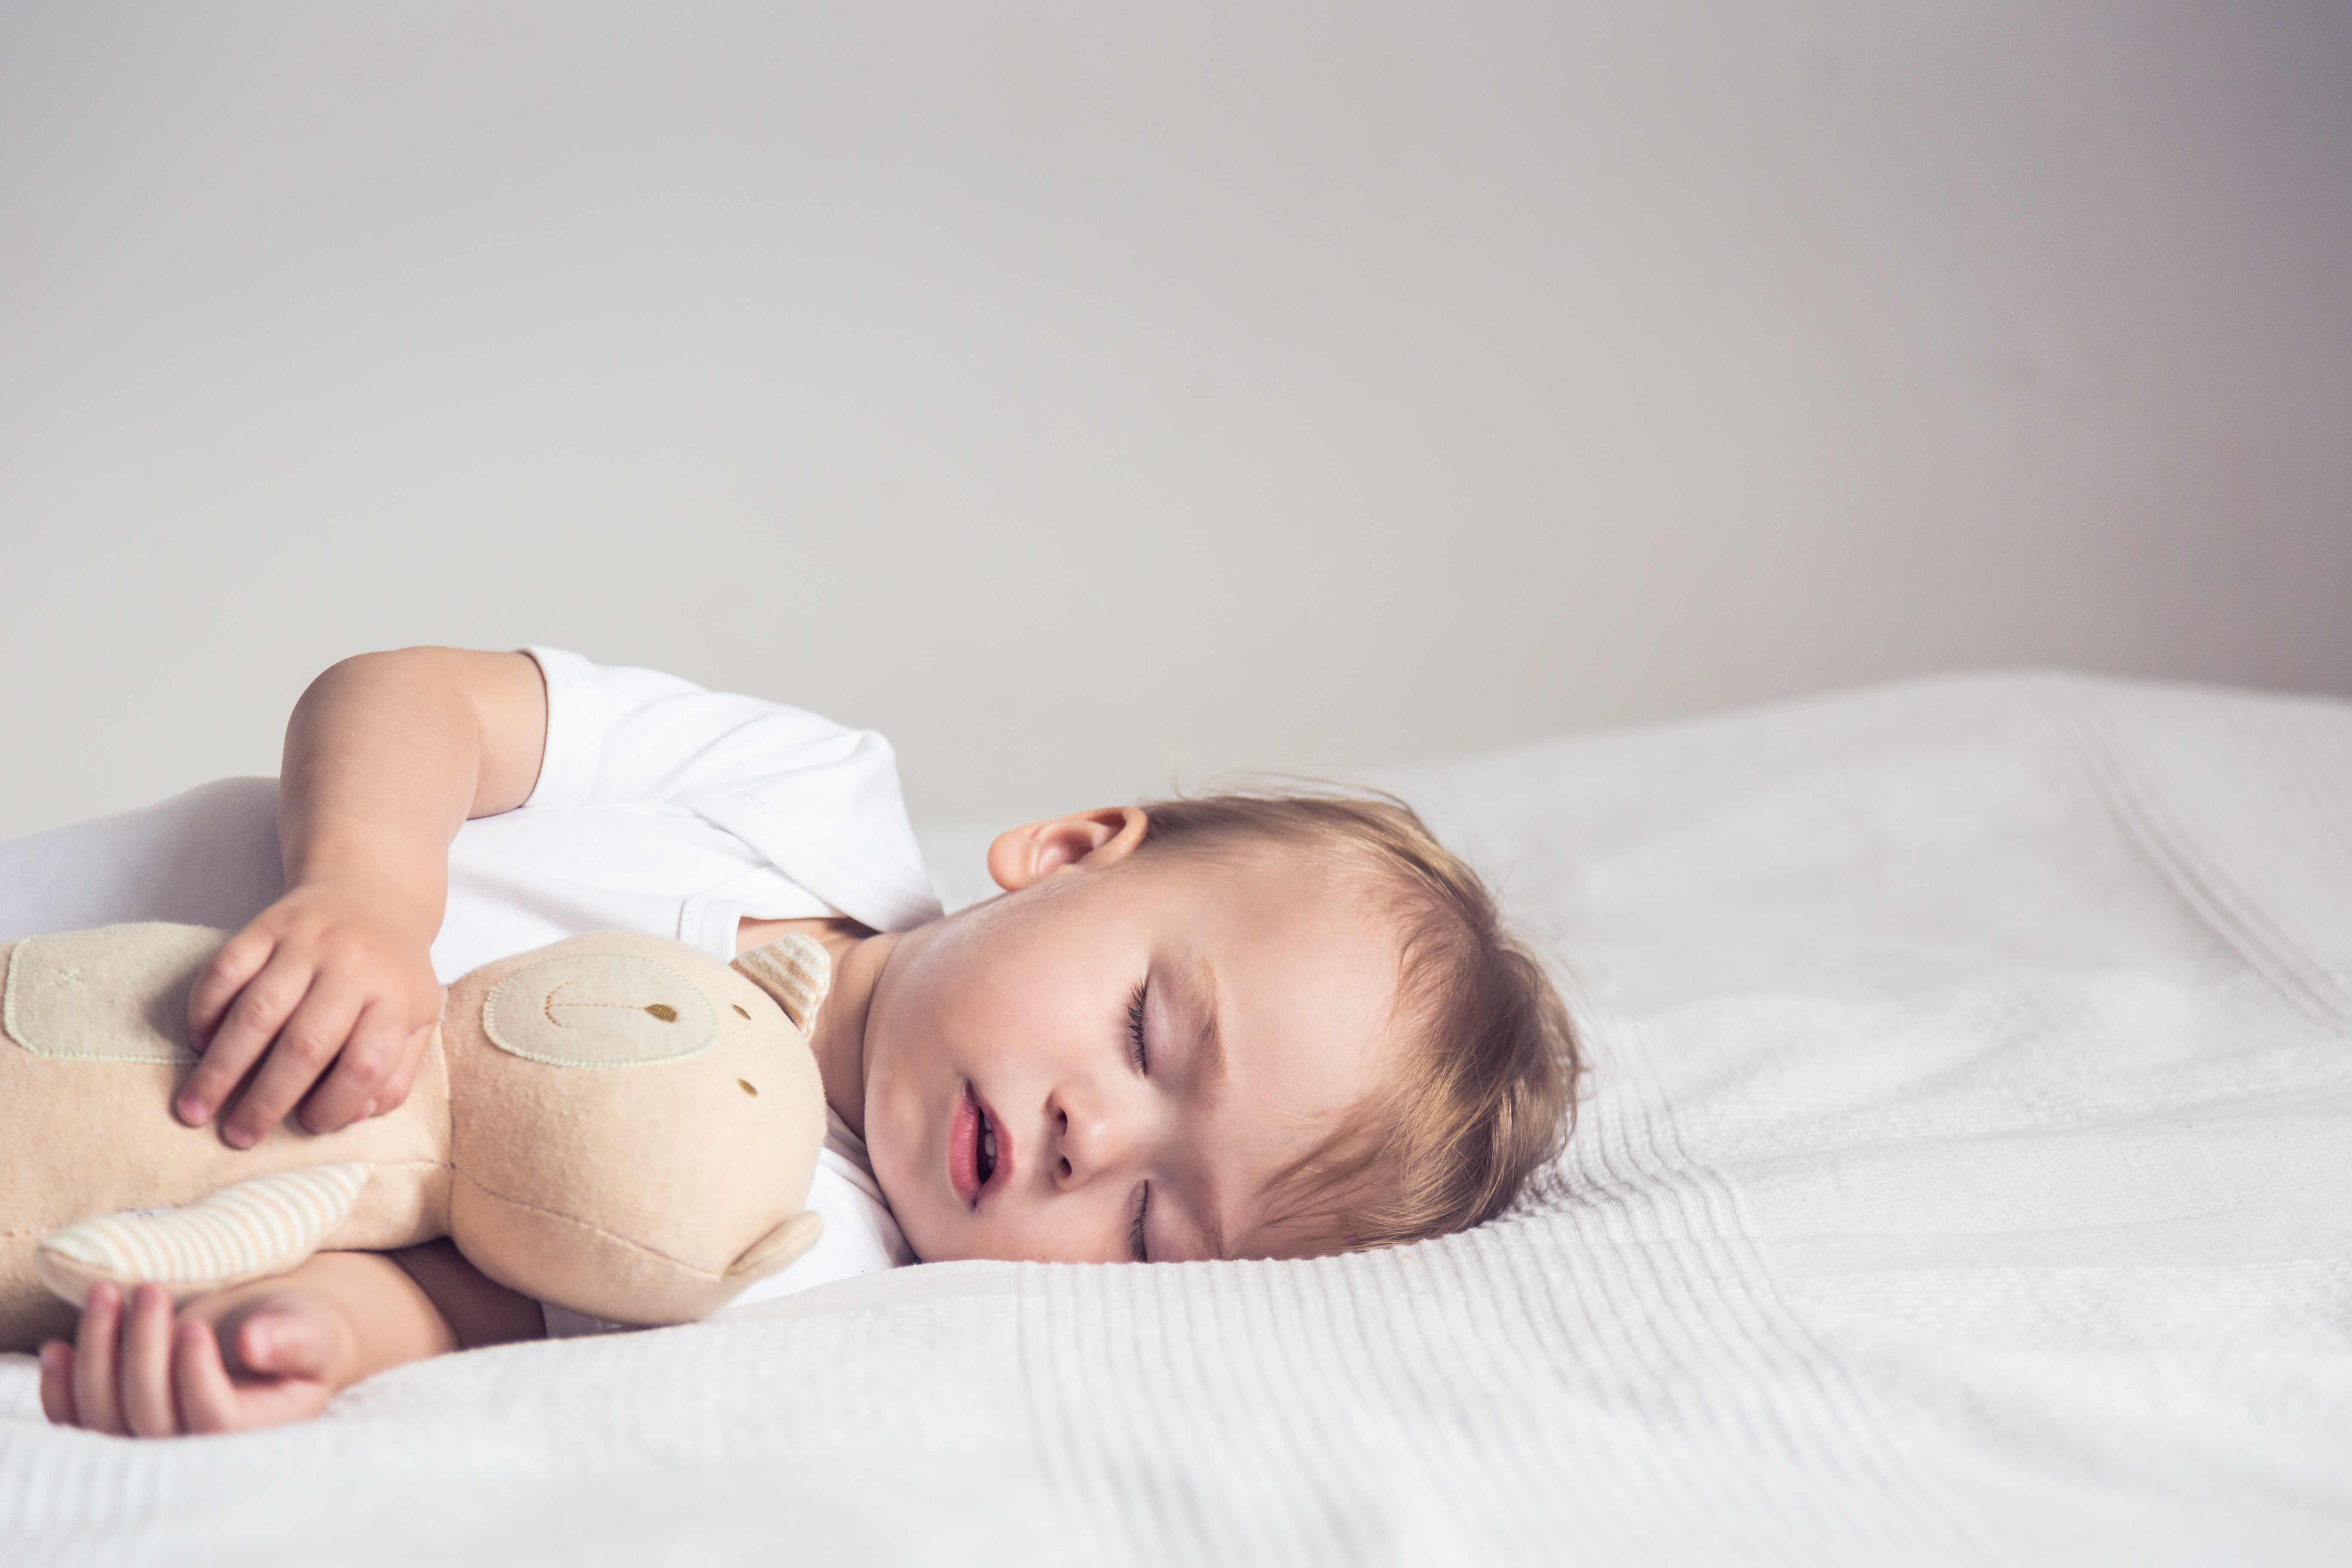  Çocuk Gelişiminde Uykunun Önemi